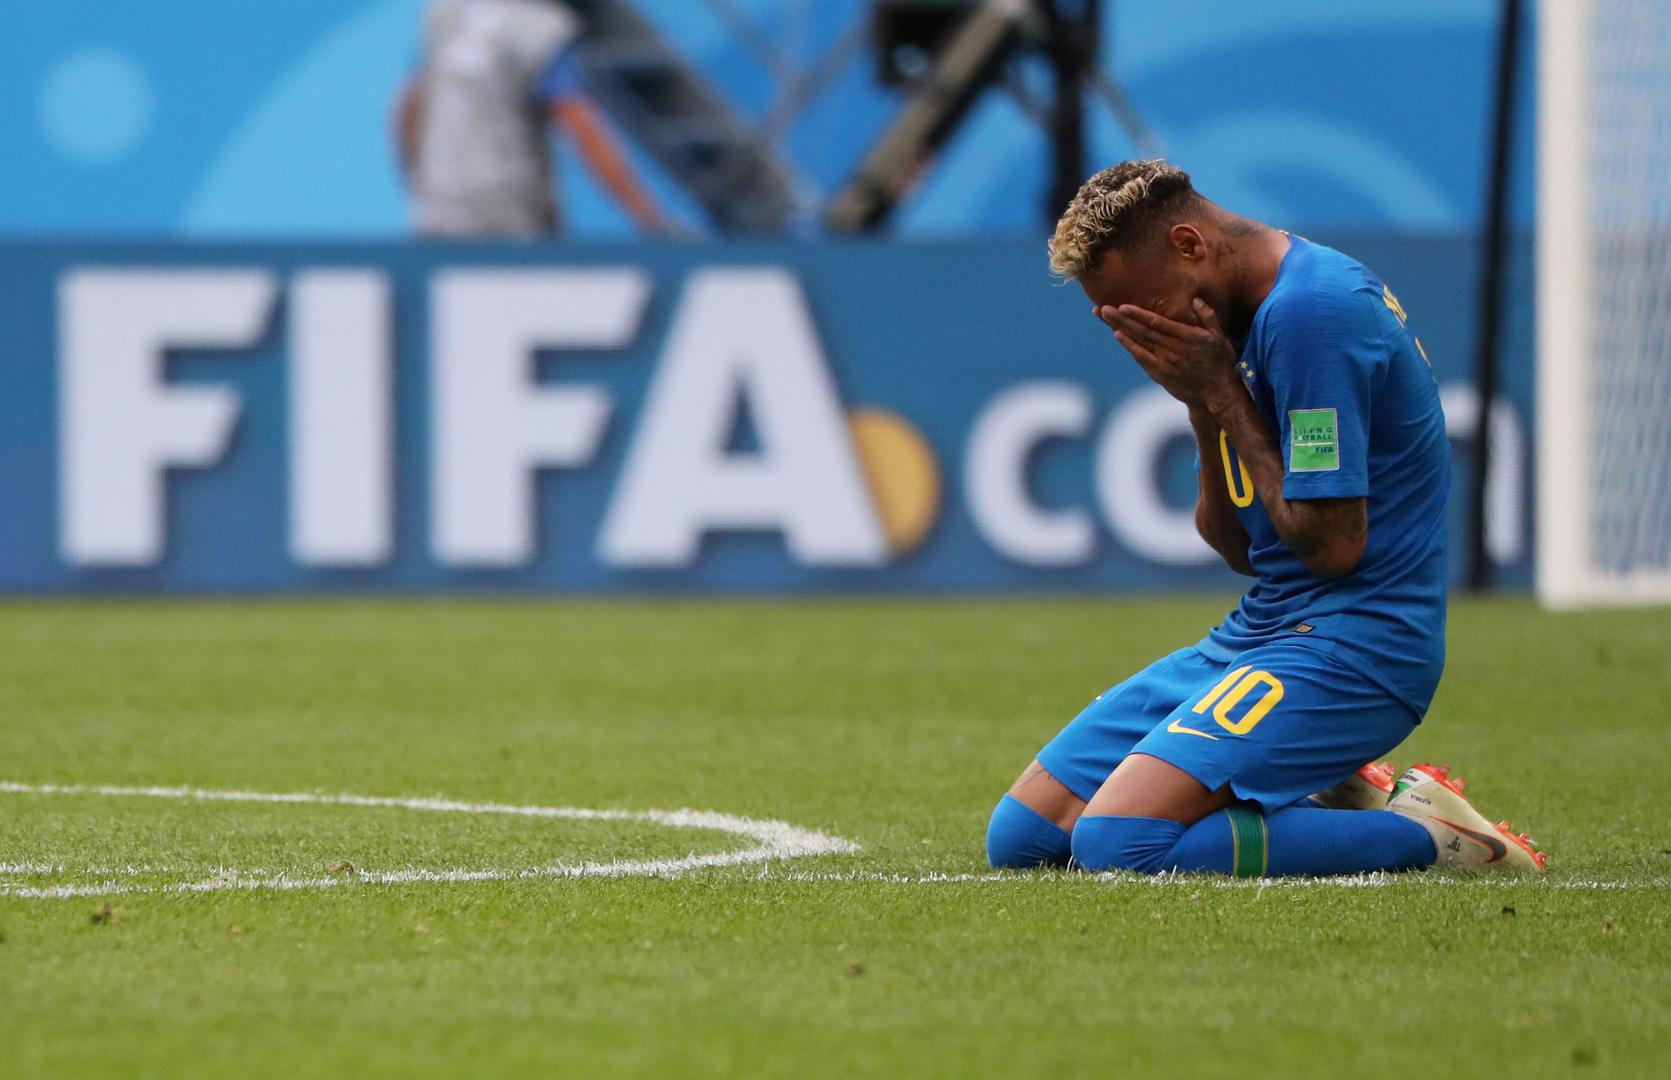 Naime, iza Neymara je teško razdoblje jer zbog ozljede koju je zadobio još u veljači bio je upitan za Svjetsko prvenstvo.

